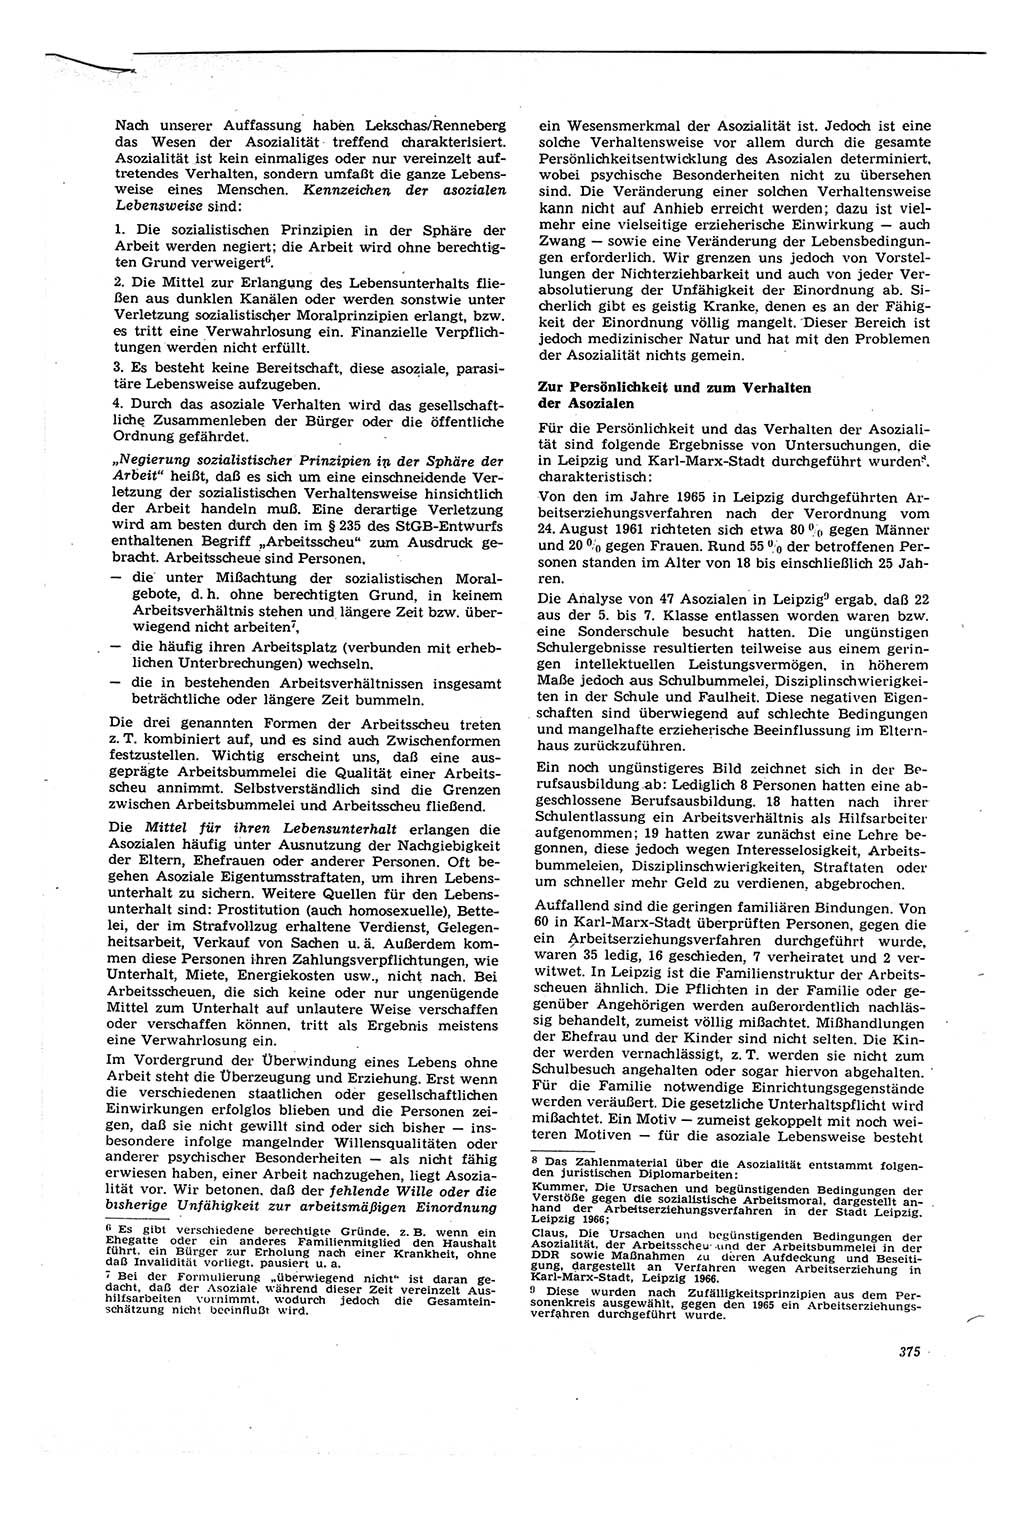 Neue Justiz (NJ), Zeitschrift für Recht und Rechtswissenschaft [Deutsche Demokratische Republik (DDR)], 21. Jahrgang 1967, Seite 375 (NJ DDR 1967, S. 375)